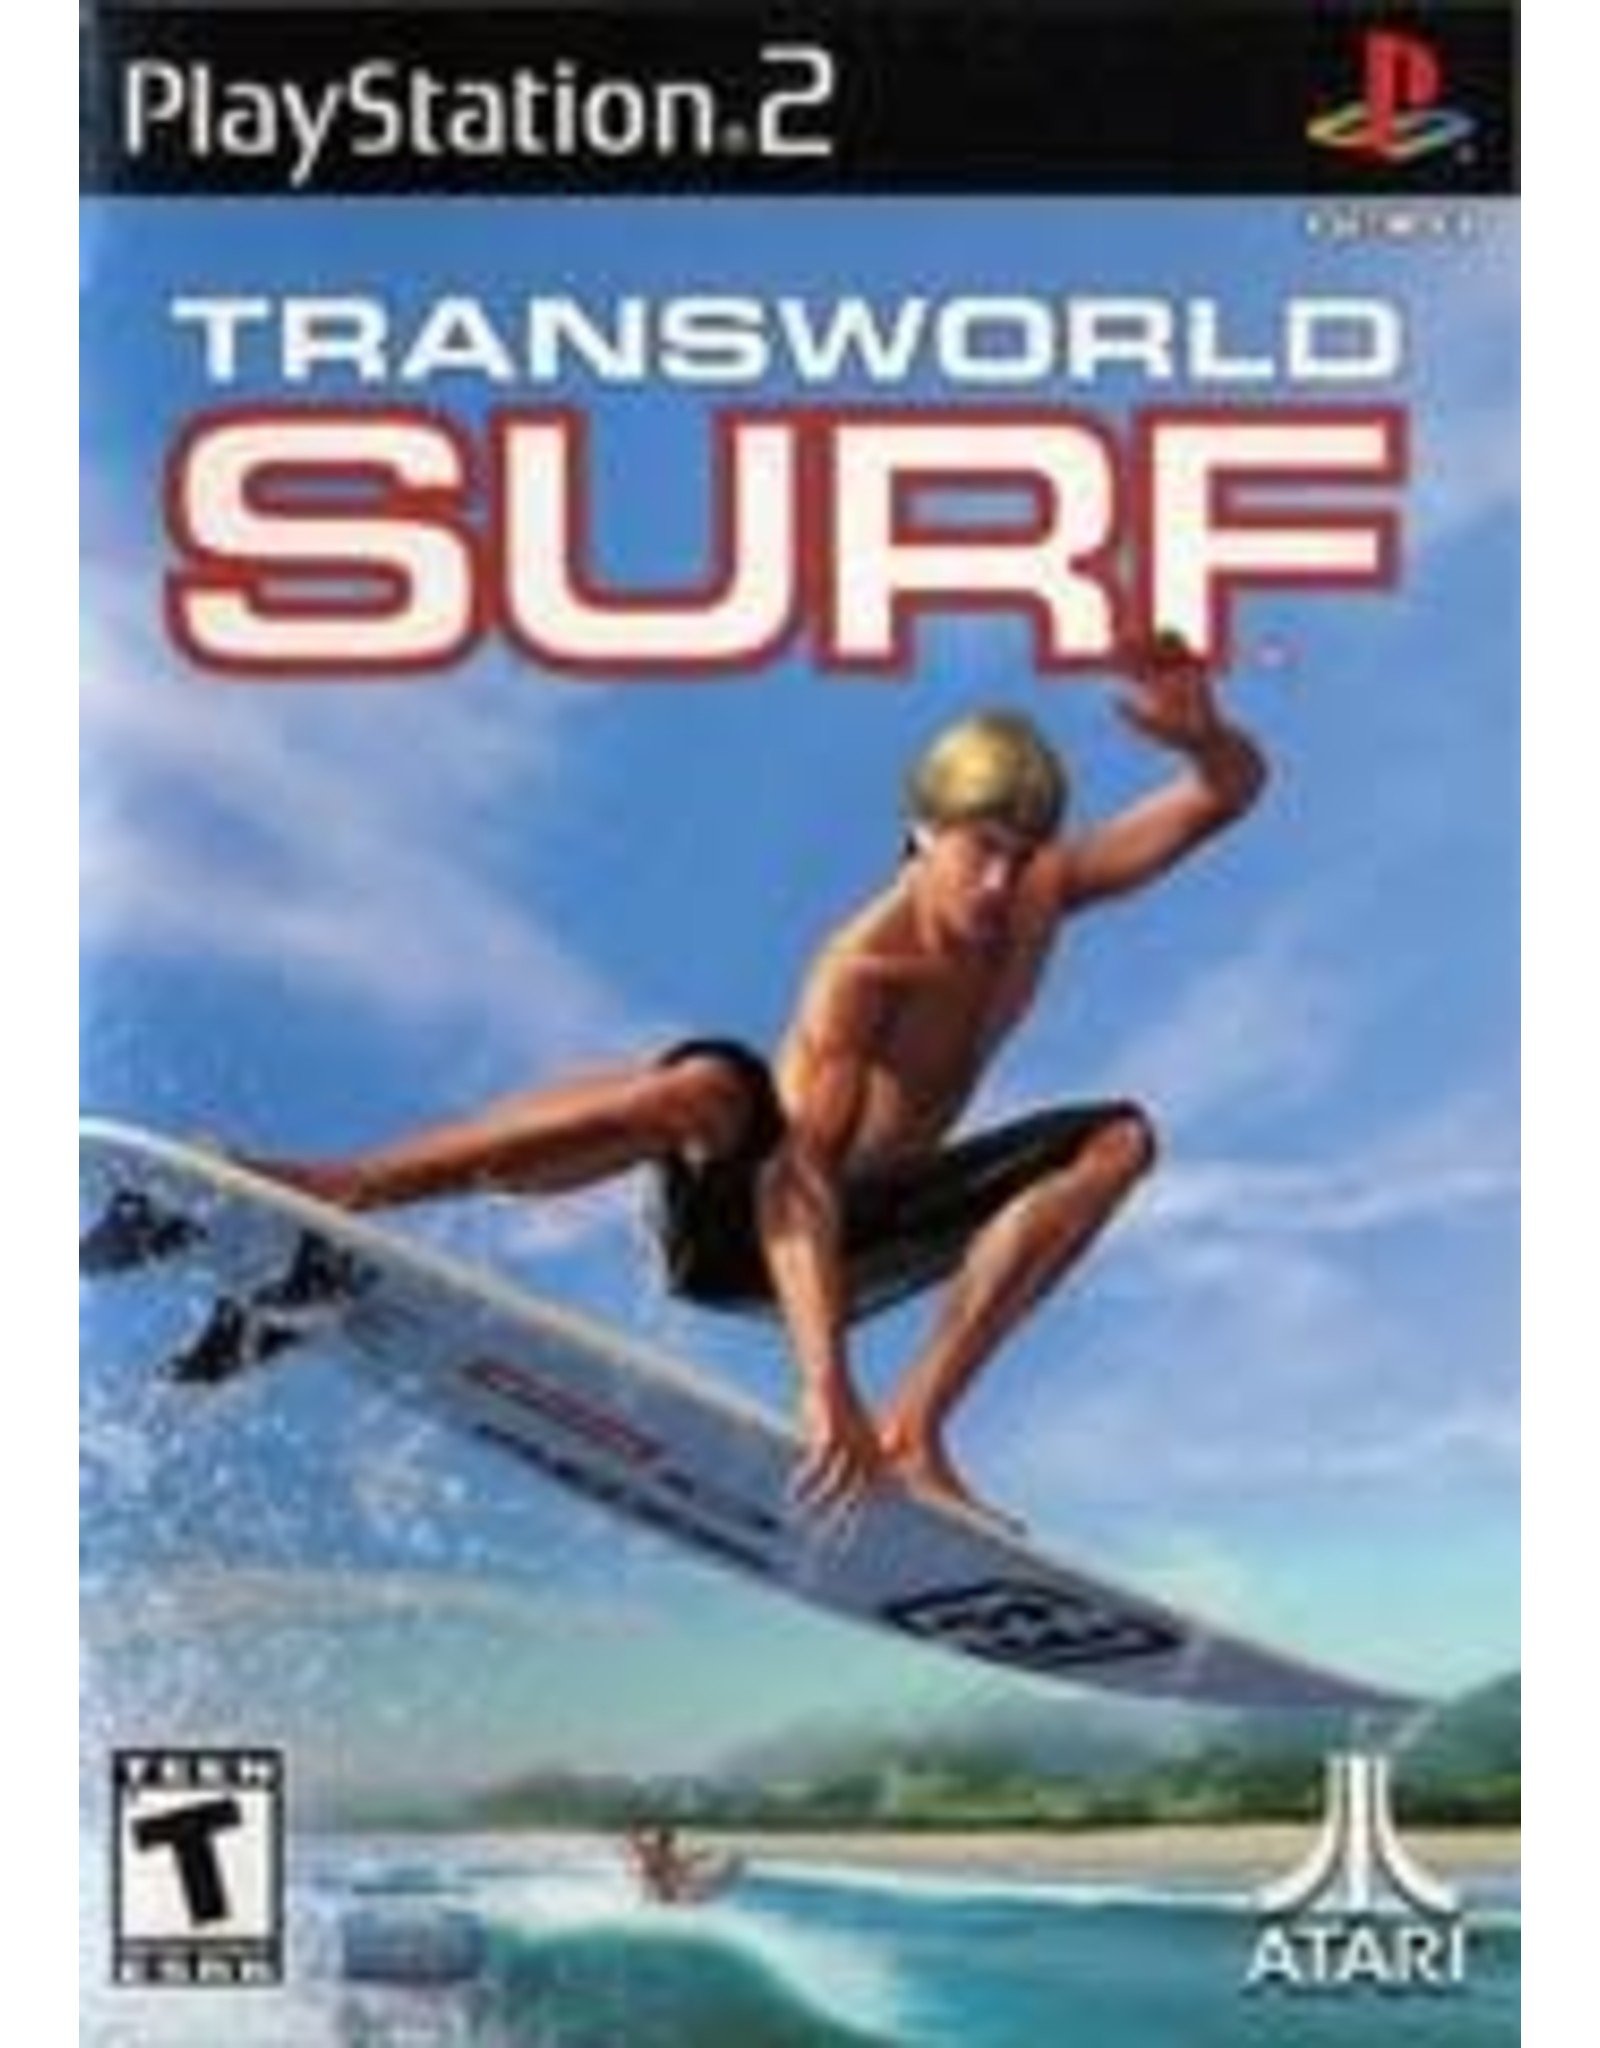 Playstation 2 Transworld Surf (CiB)